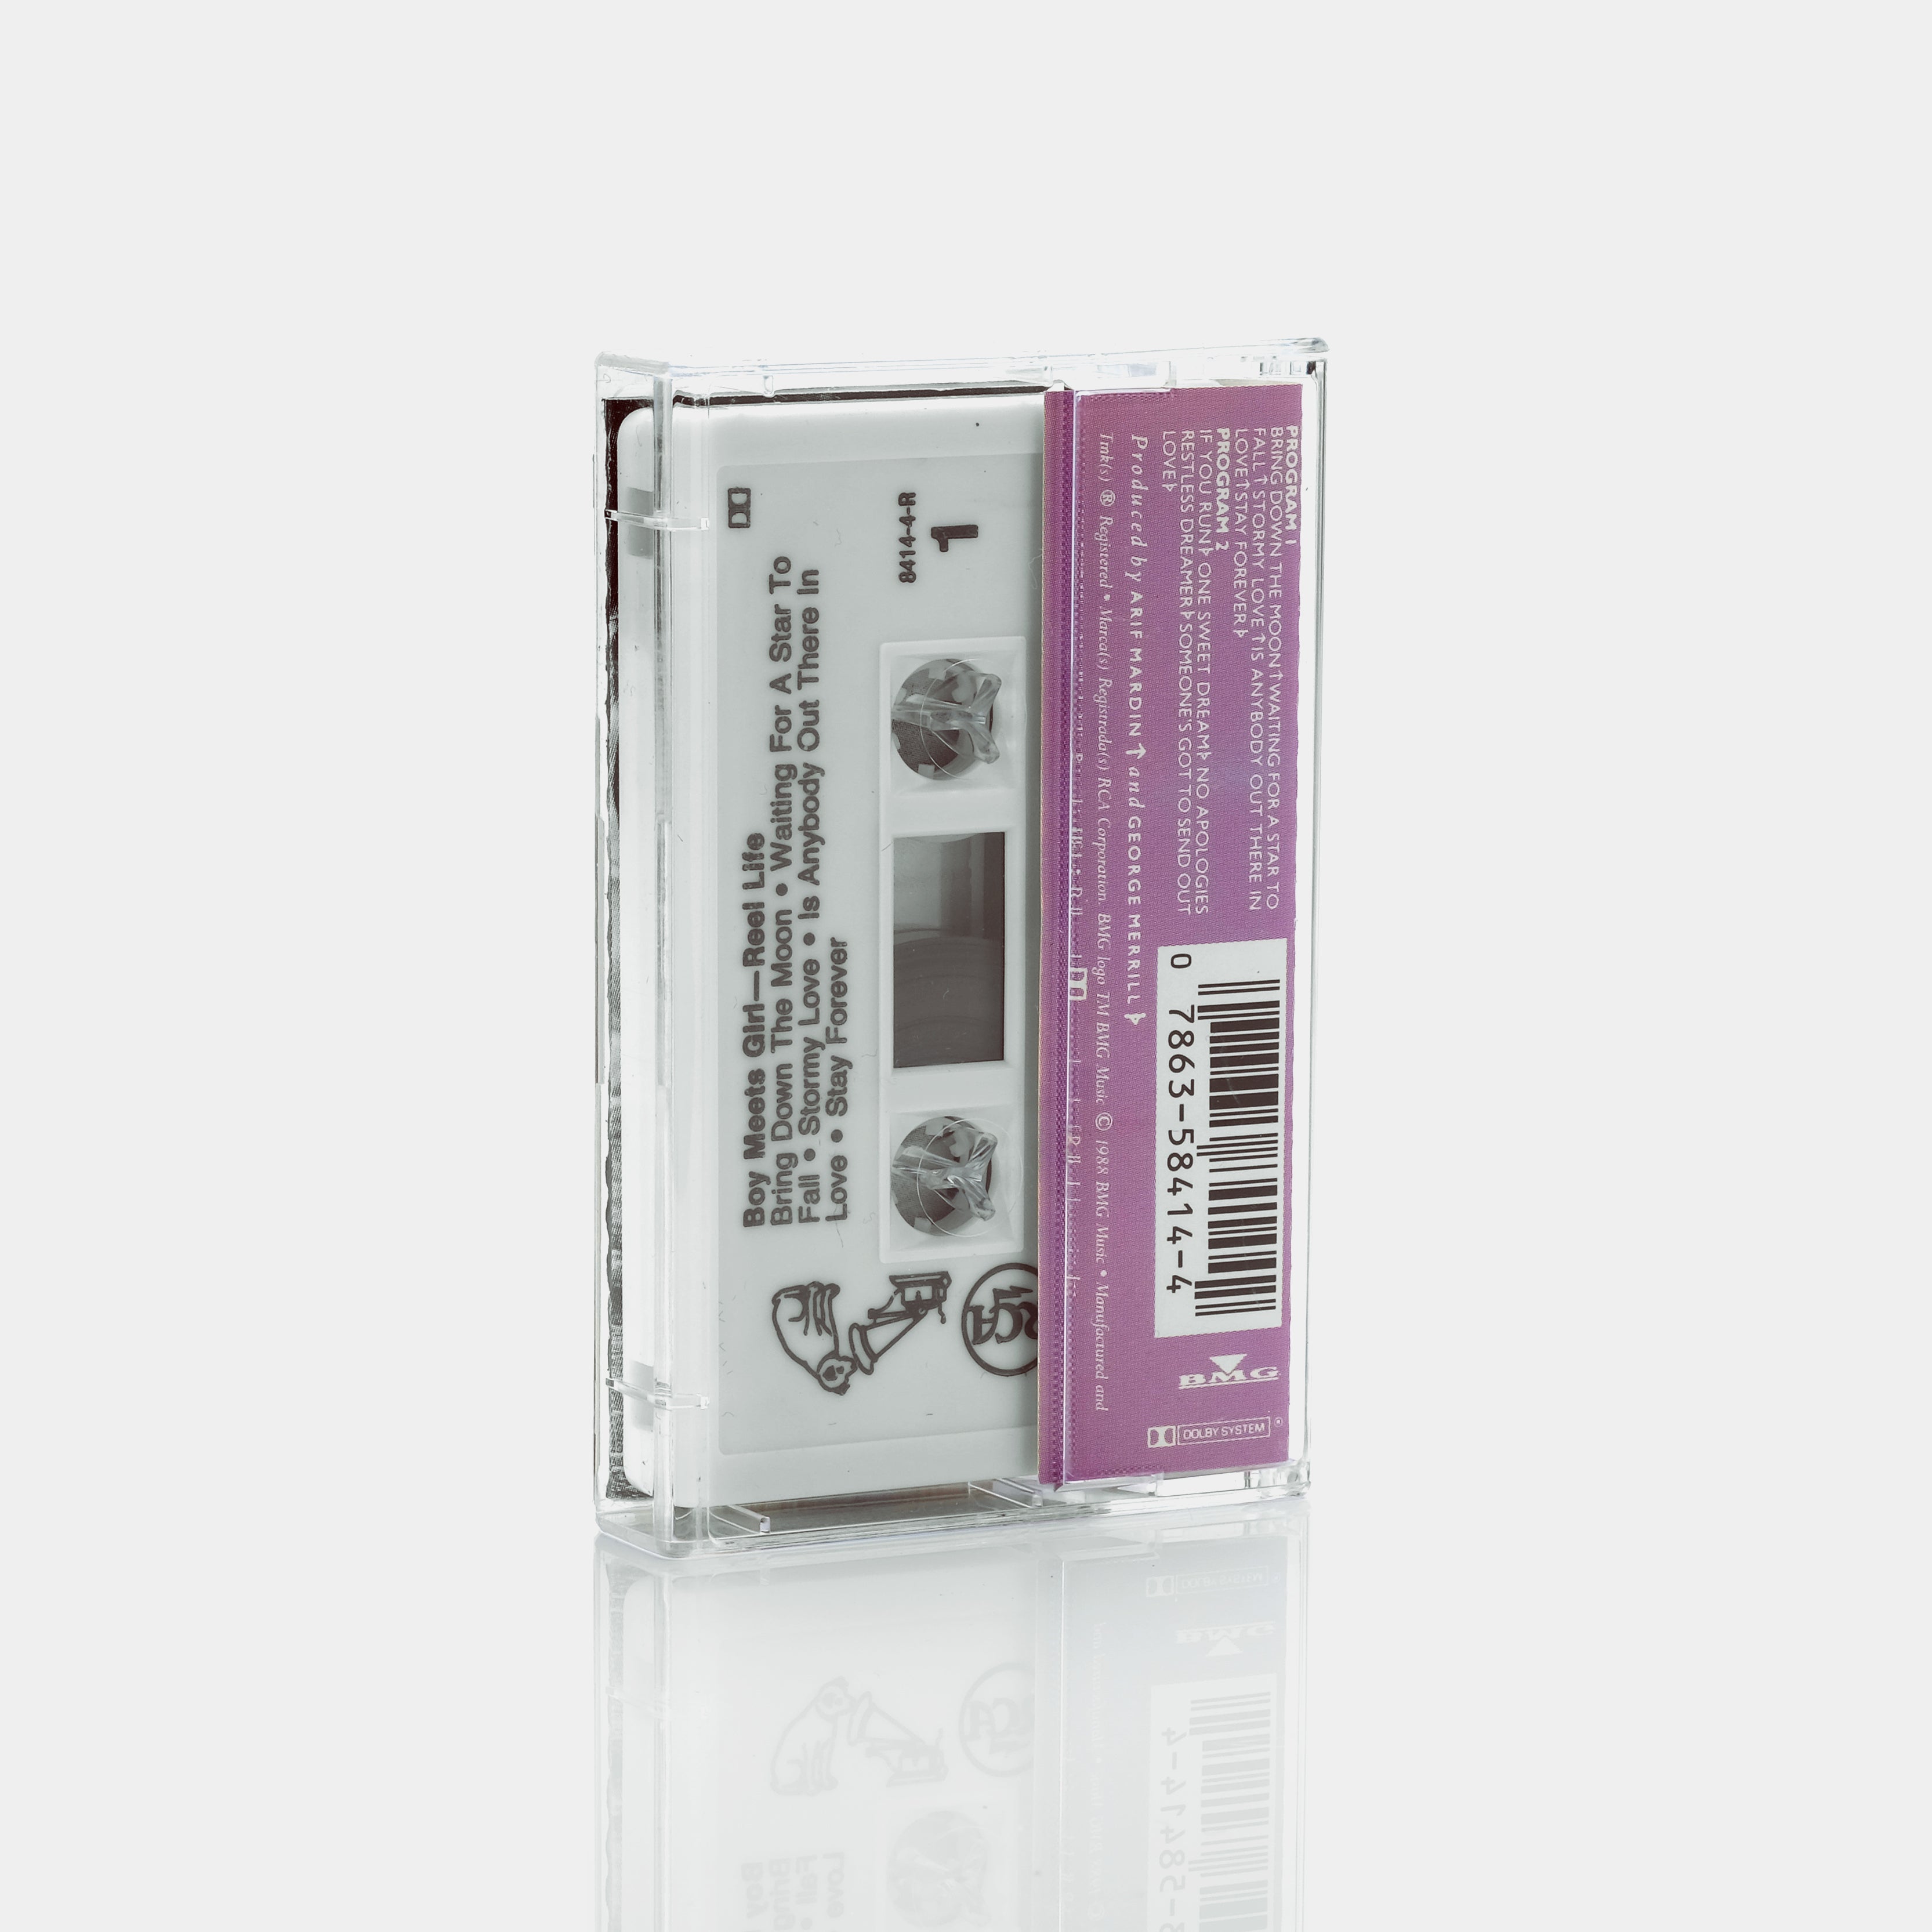 Boy Meets Girl - Reel Life Cassette Tape